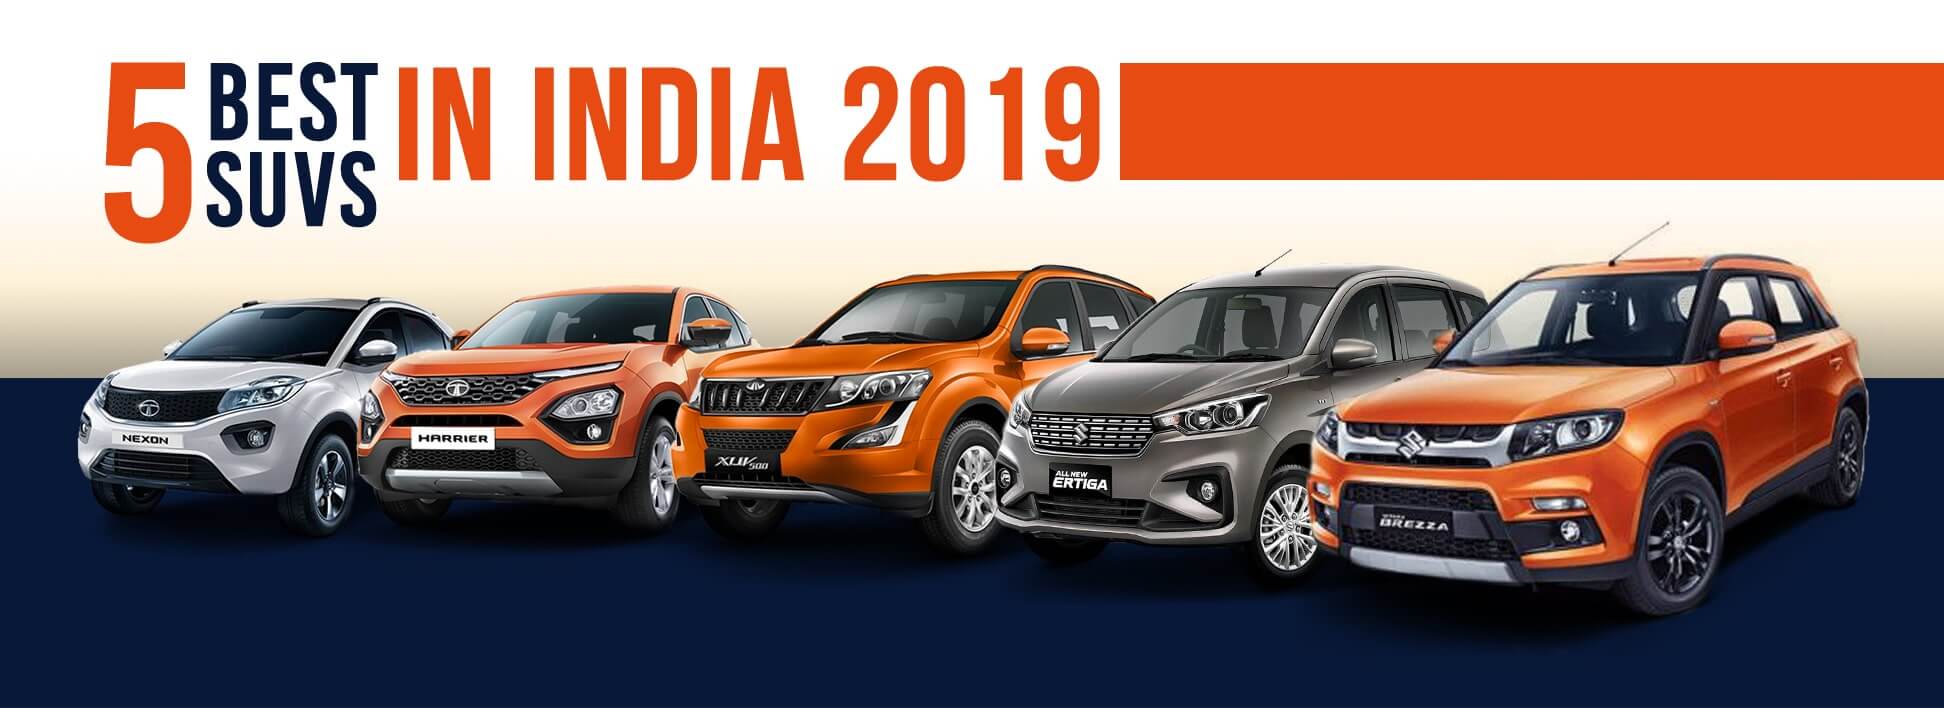 New SUV Cars in India 2019, Compare suv cars